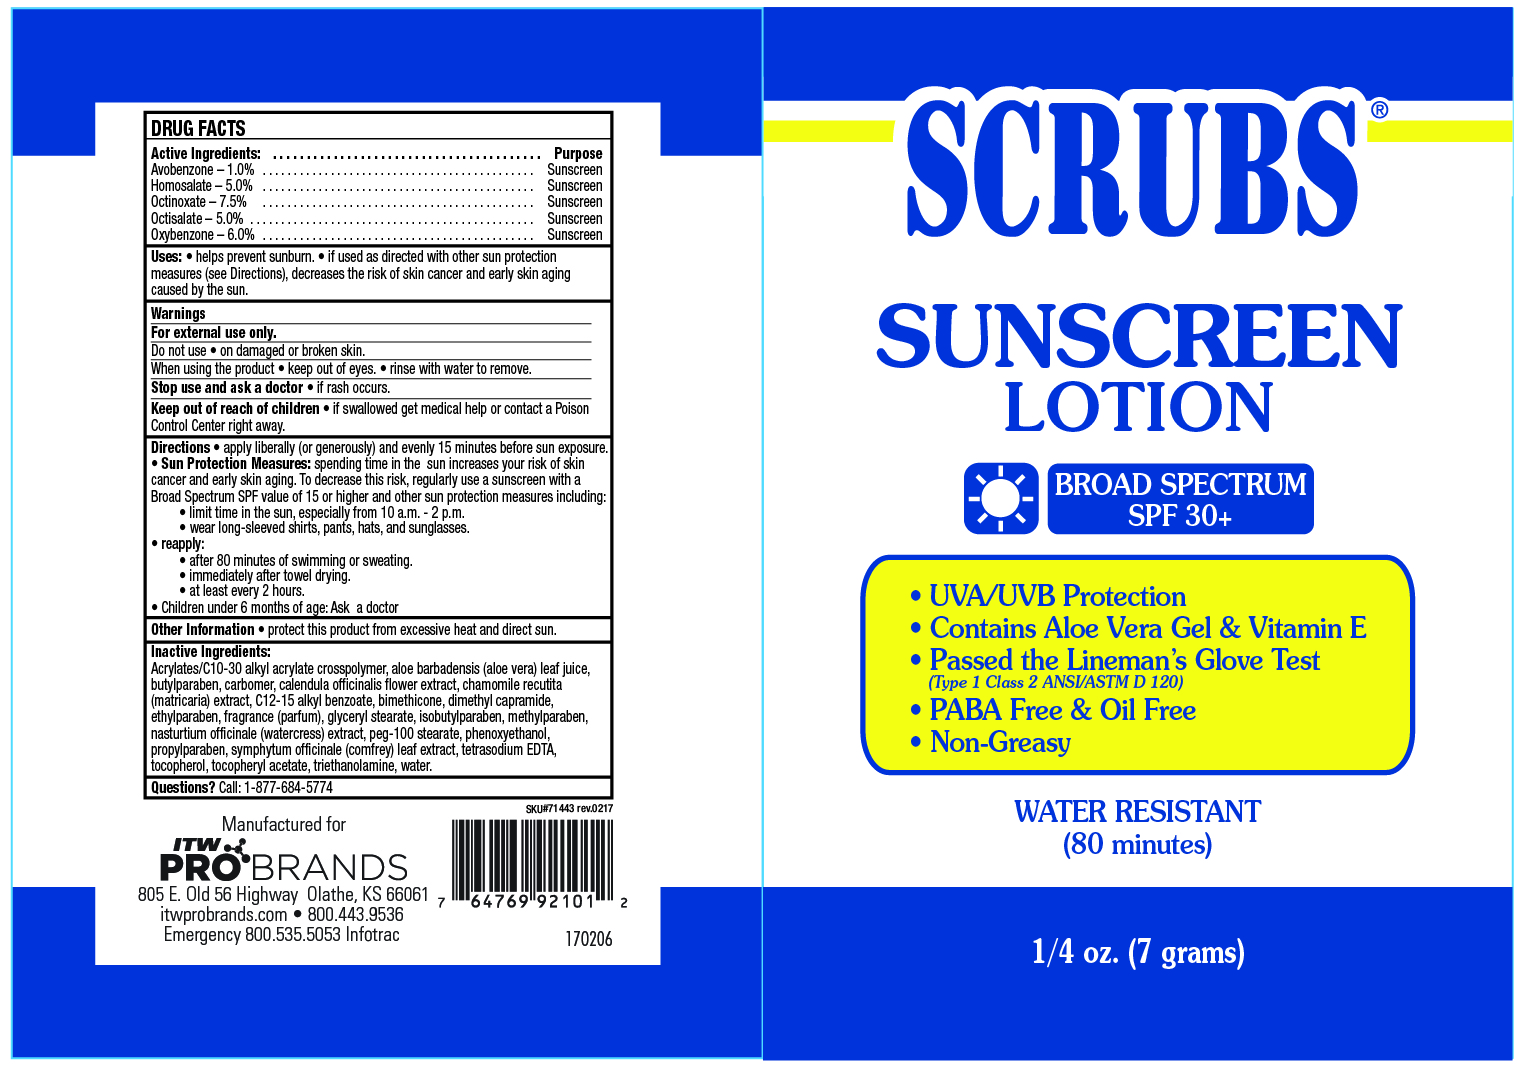 SCRUB Sunscreen